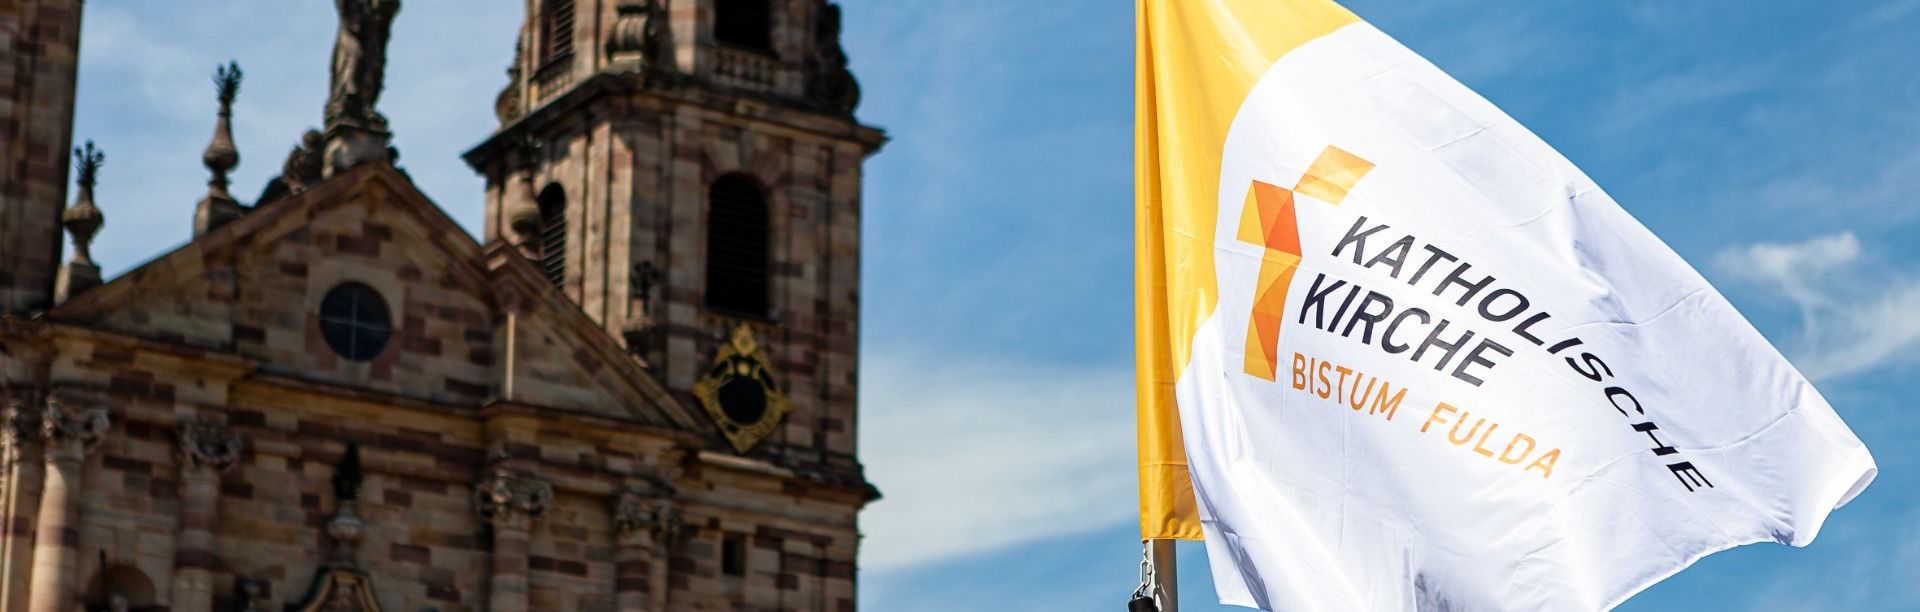 Stellungnahme des Bistums Fulda zu den Durchsuchungen und dem Ermittlungsverfahren in Kalbach